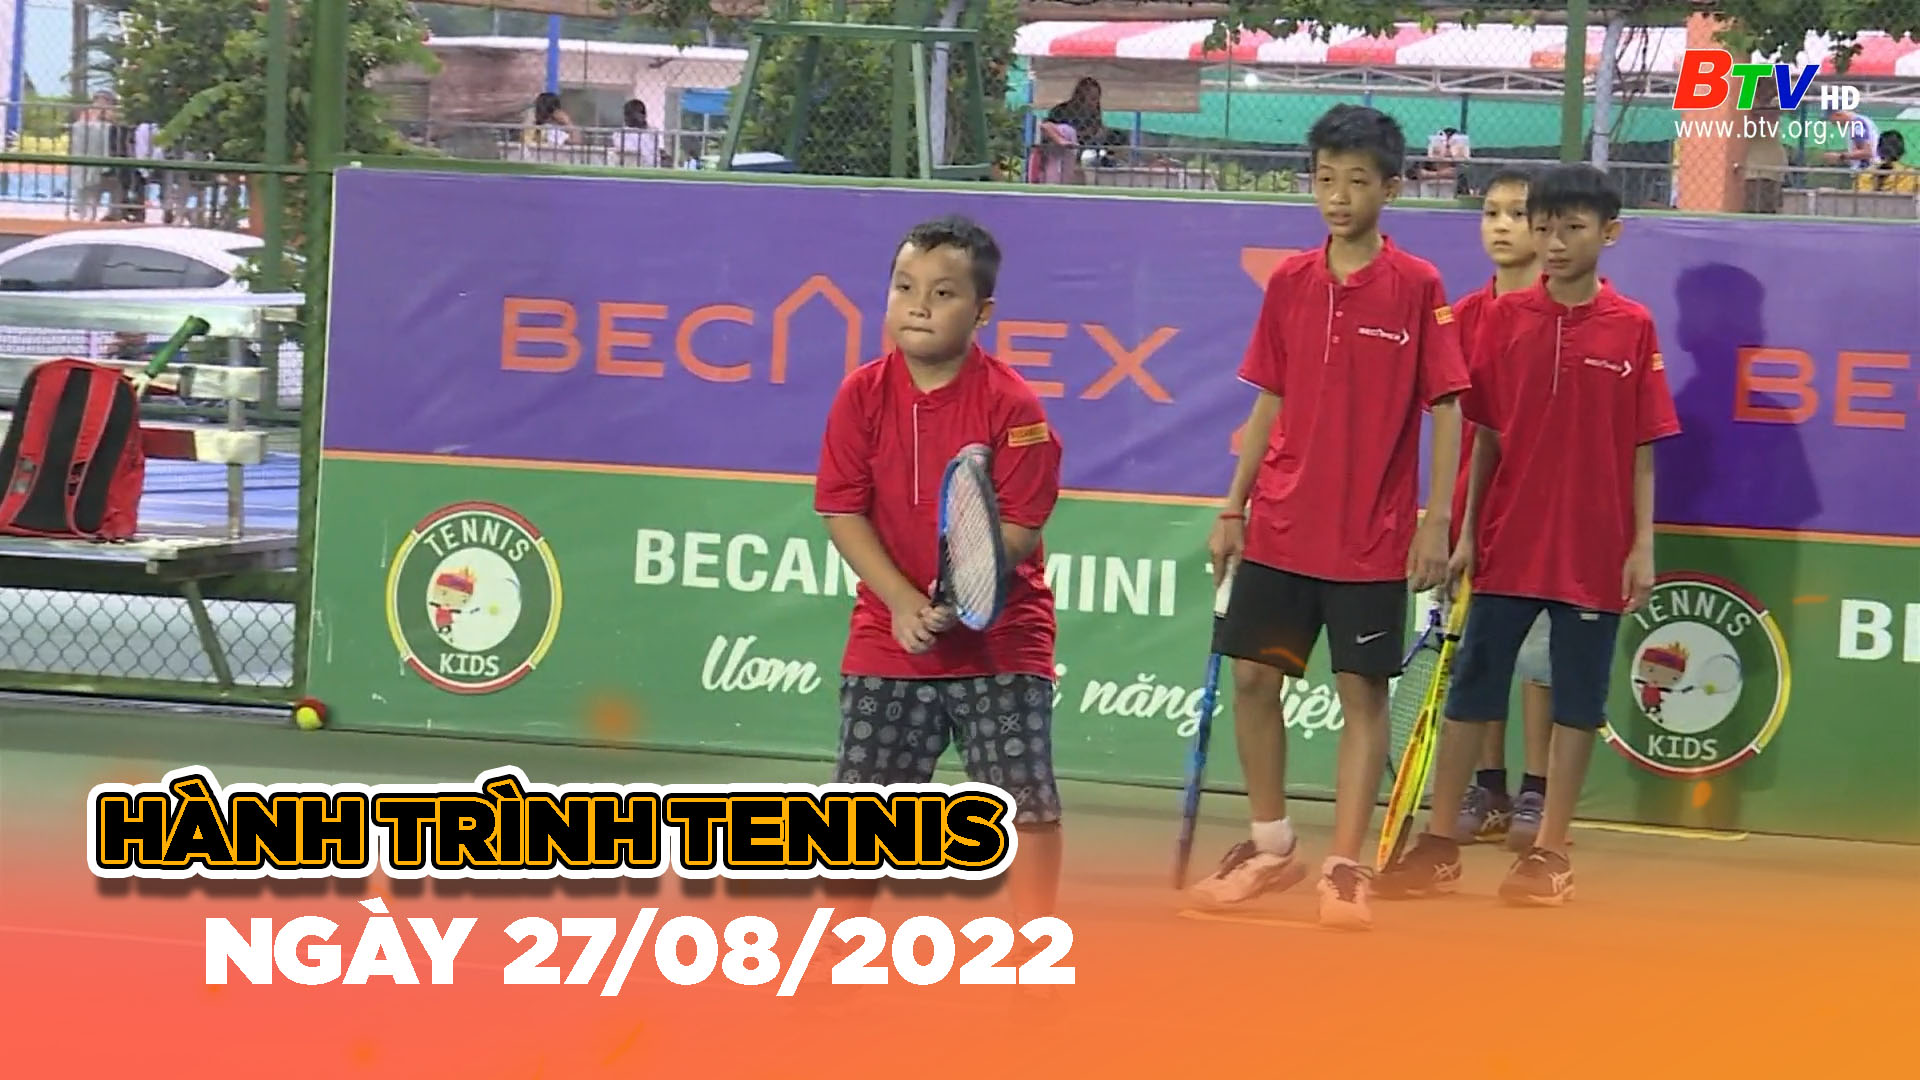 Hành trình Tennis (Ngày 27/08/2022)